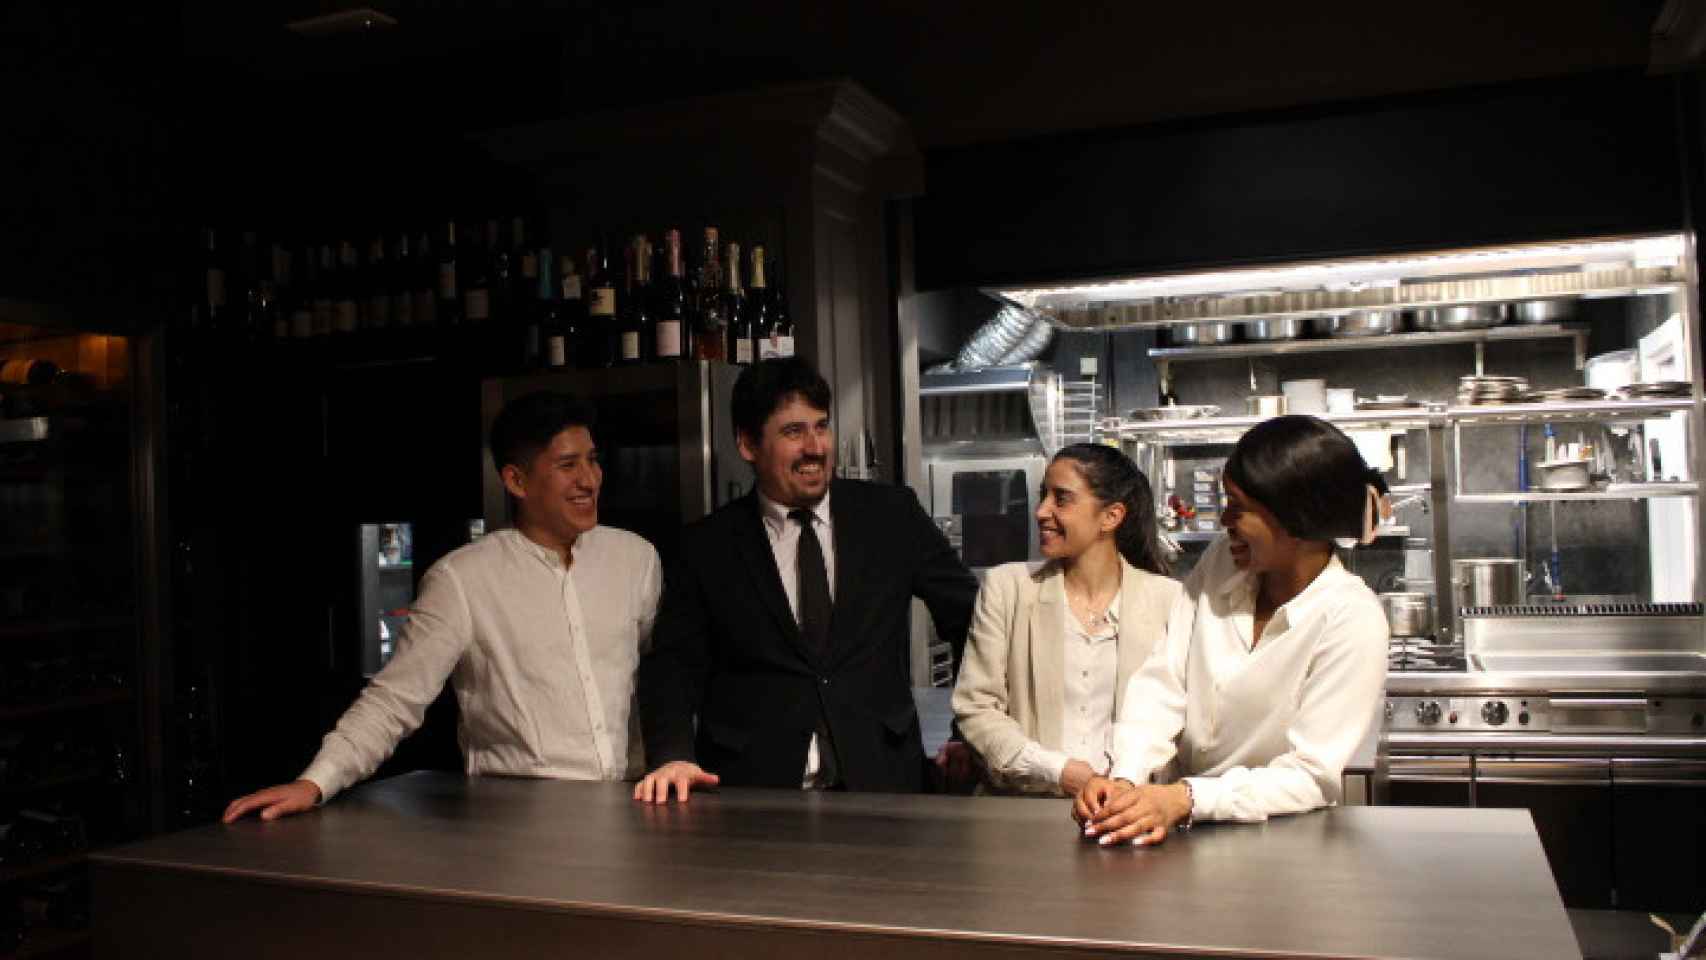 De izquierda a derecha,  el camarero Anthony Aquino, el sumiller Íñigo Llamosas, la jefa de sala Ofelia Amboage y la camarera María Bibi.